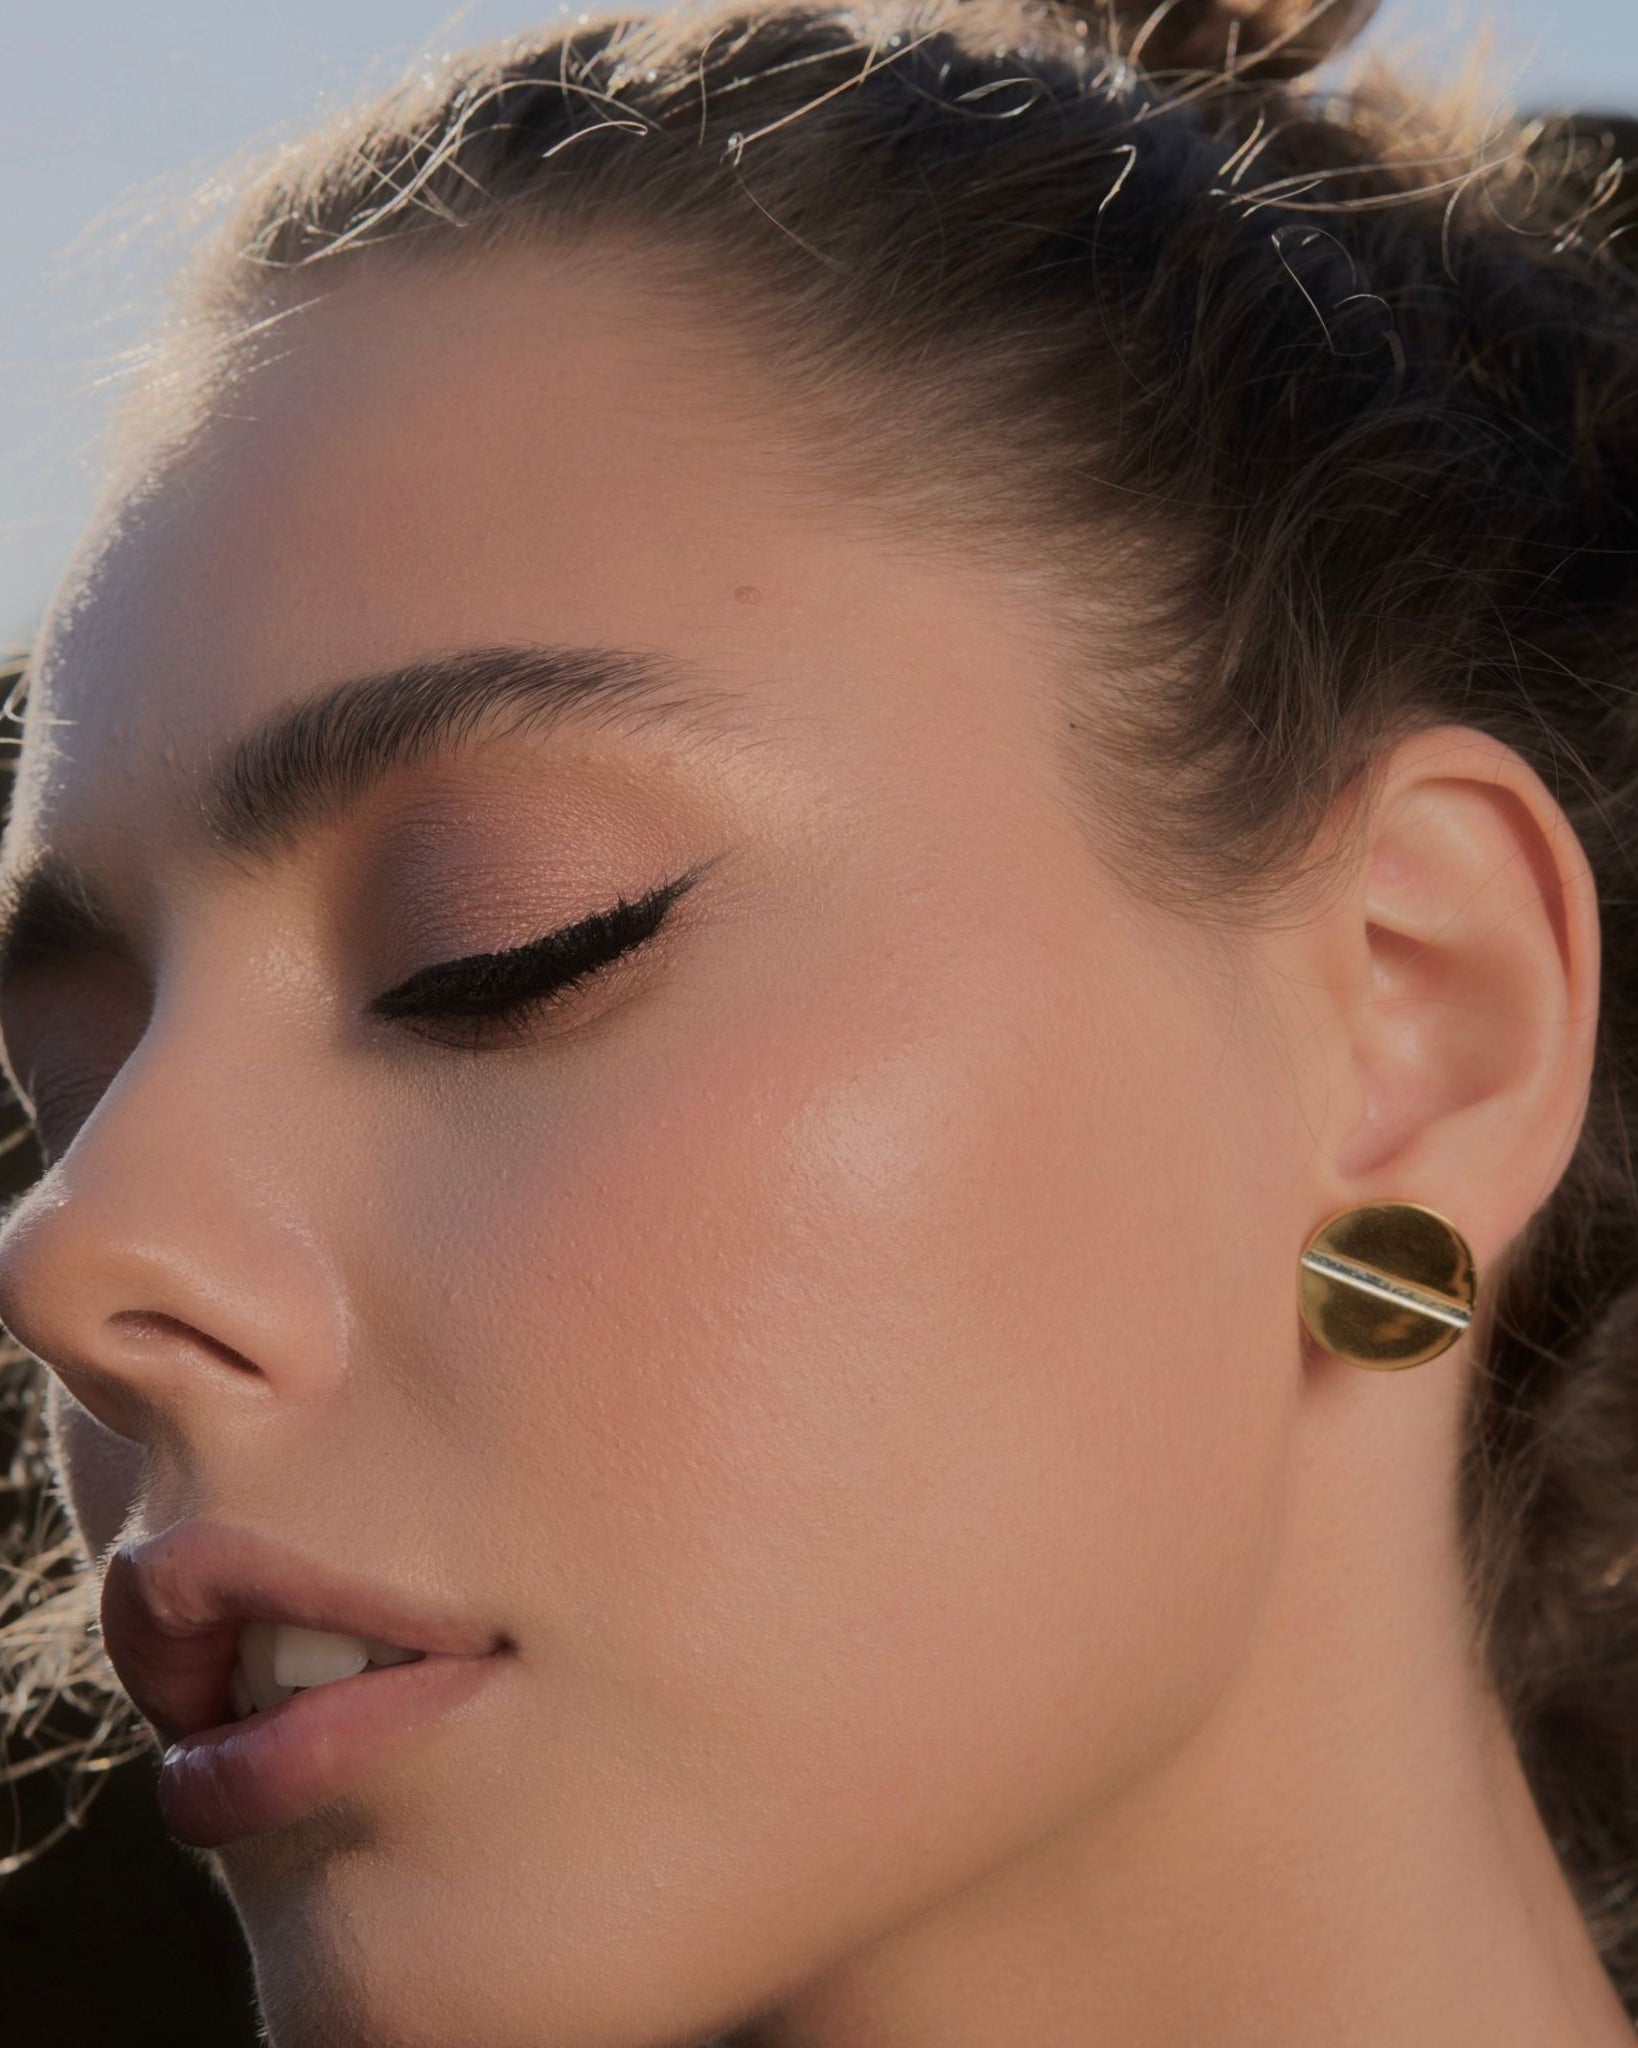 Nila 2 in 1 stud statement earrings, gold stud earrings